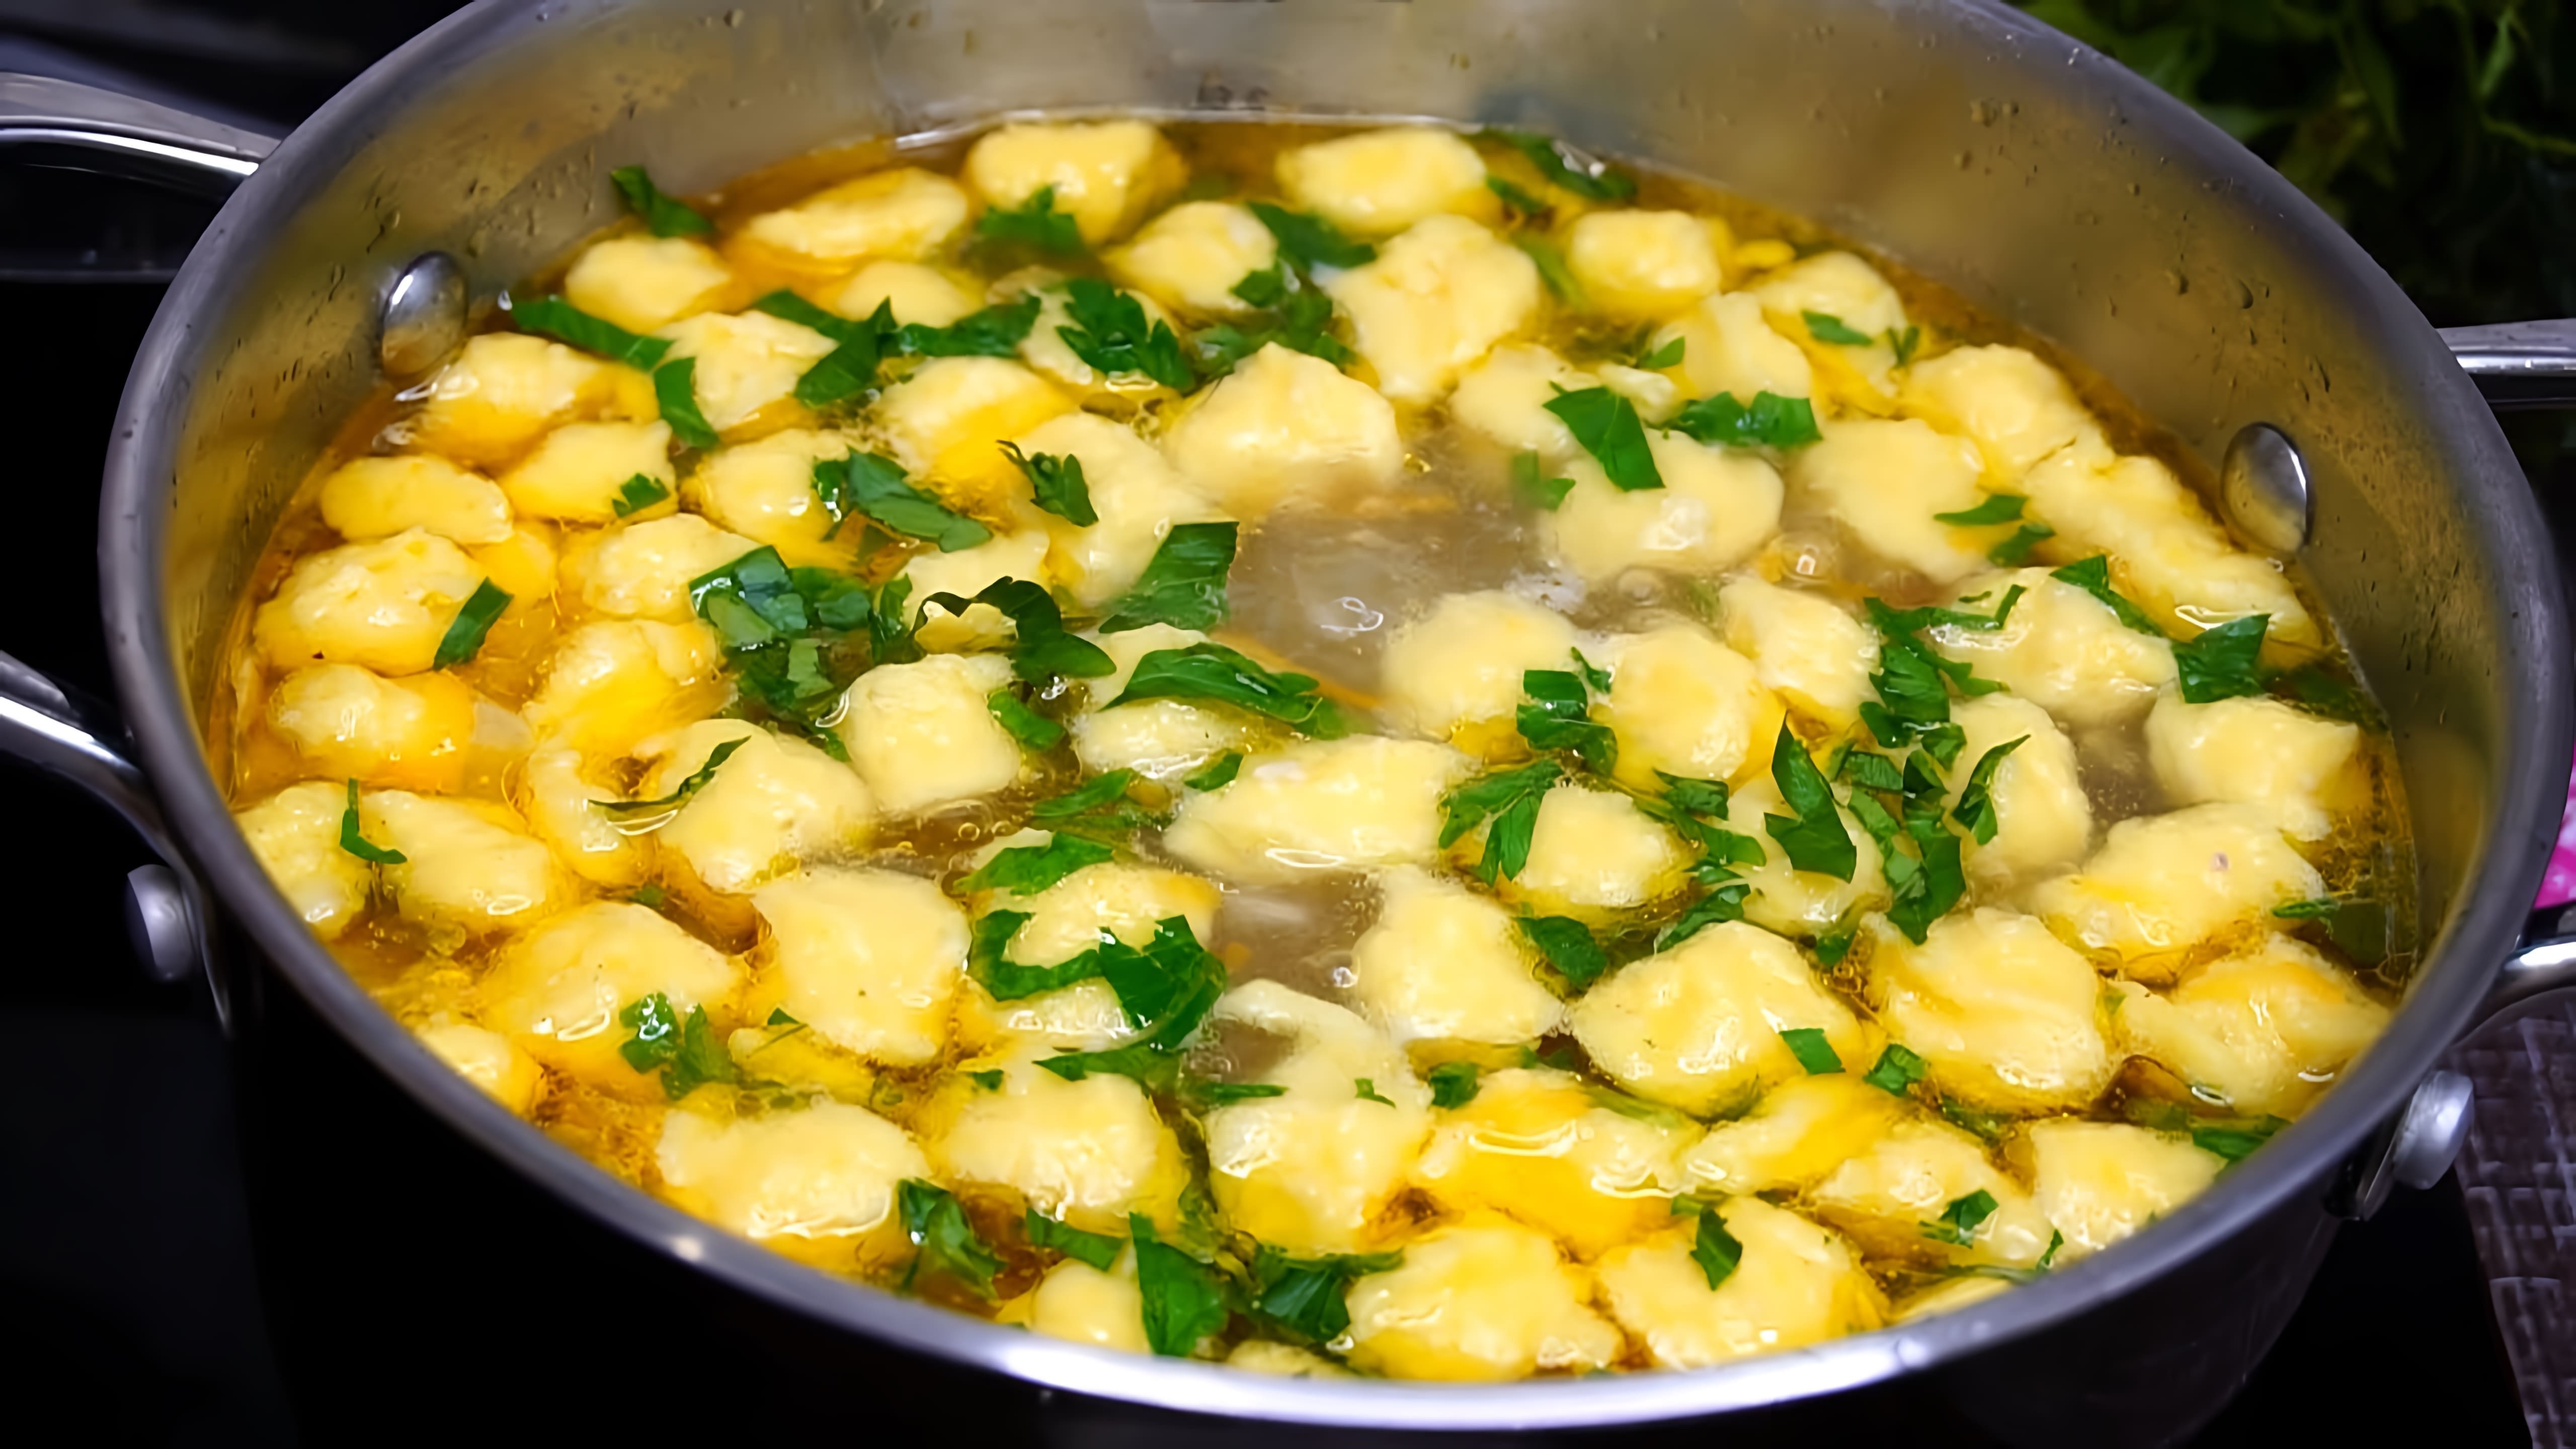 Видео посвящено приготовлению супа с пельменями, который создатель готовит 3 раза в неделю и никогда не устает от него